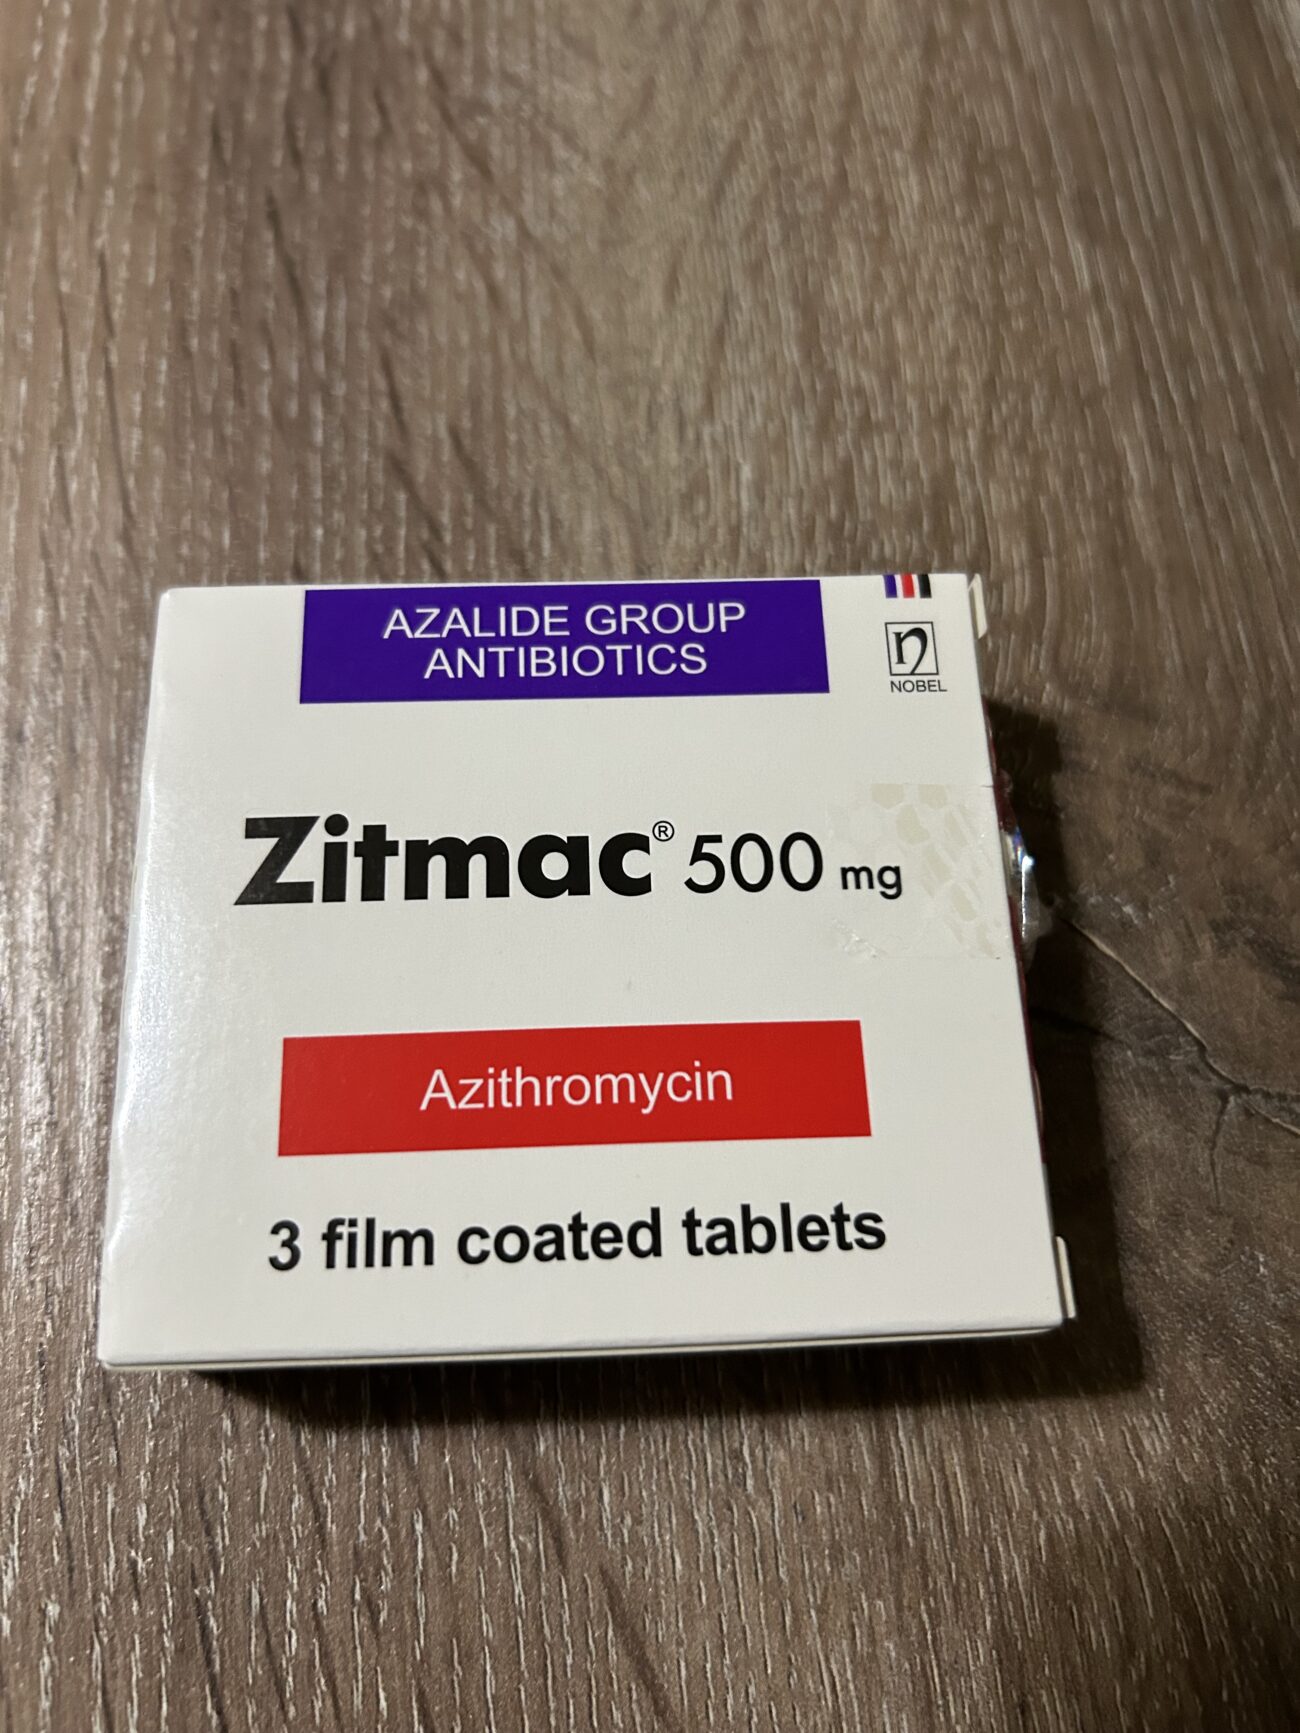 ついに、抗菌薬のアジスロマイシンを購入する。これが、特効薬となる。